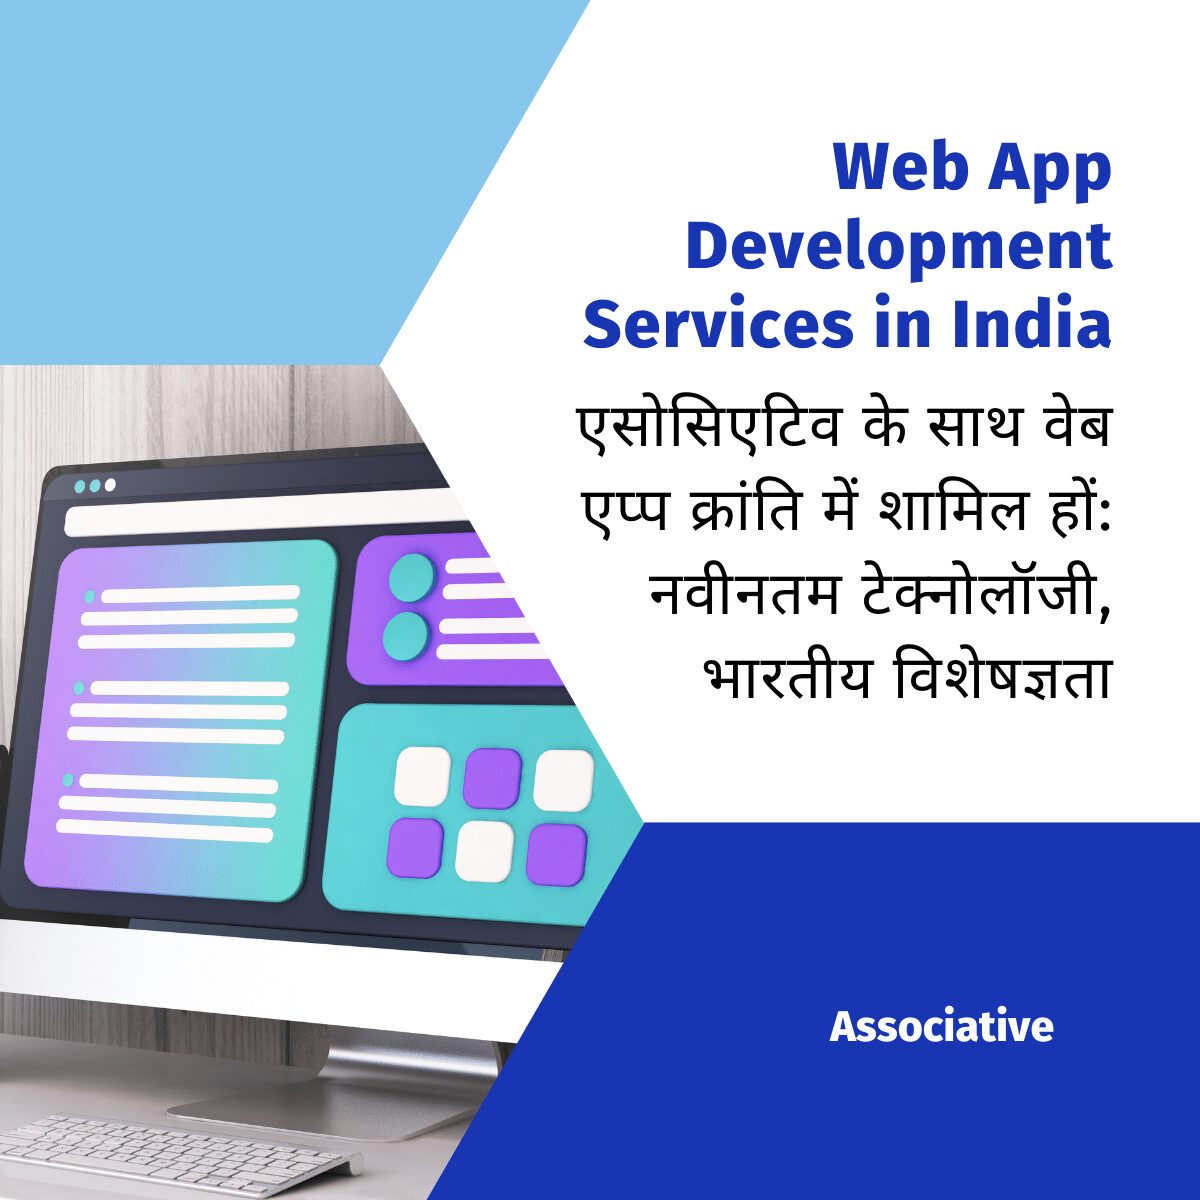 Web App Development Services in India एसोसिएटिव के साथ वेब एप्प क्रांति में शामिल हों: नवीनतम टेक्नोलॉजी, भारतीय विशेषज्ञता